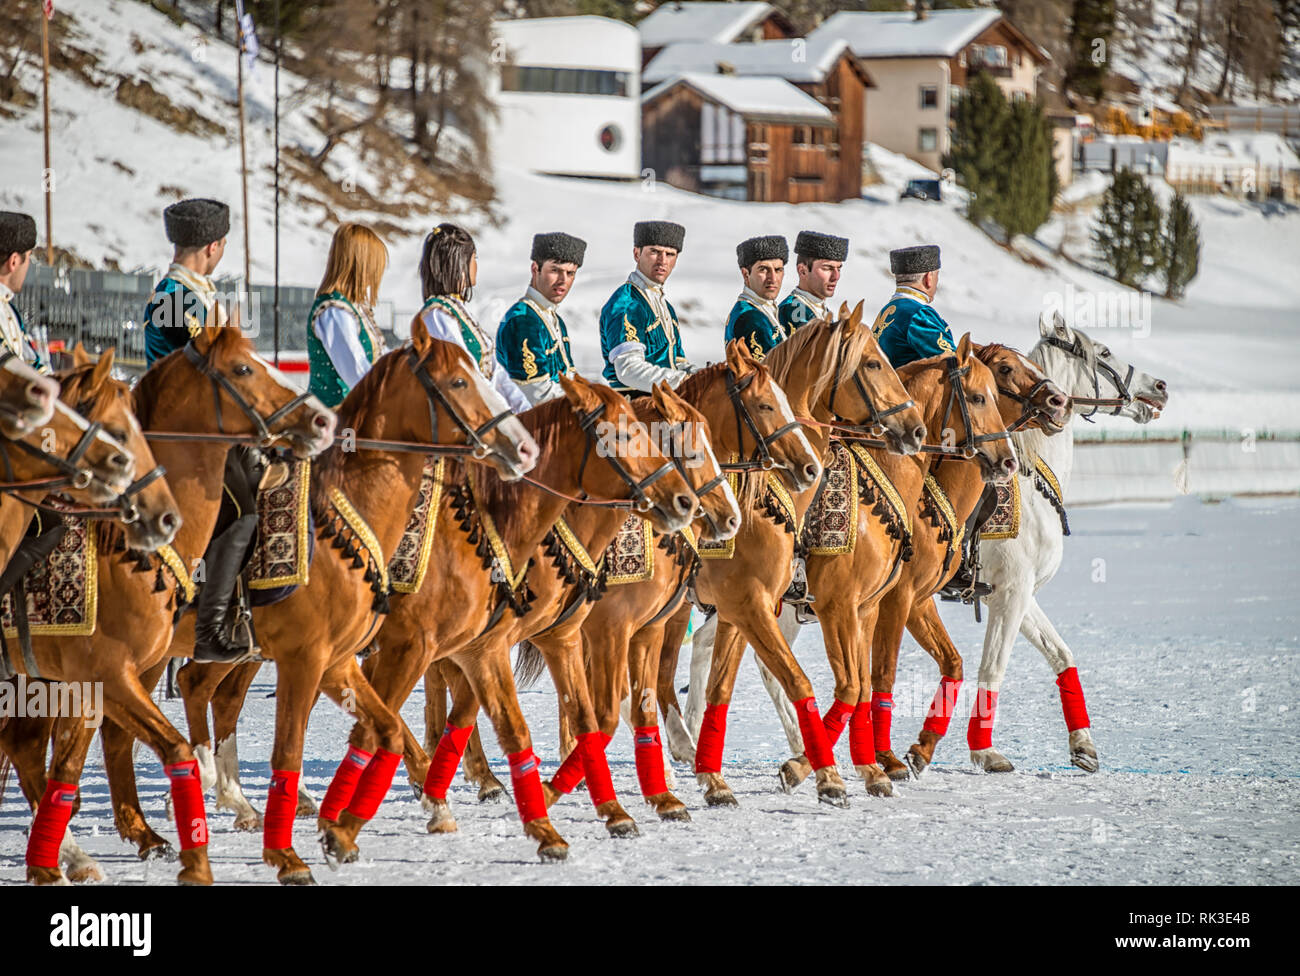 Pilotes azerbaïdjanais lors d'un spectacle pour le match de la coupe du monde Snow Polo 2019, St Moritz, Suisse Banque D'Images